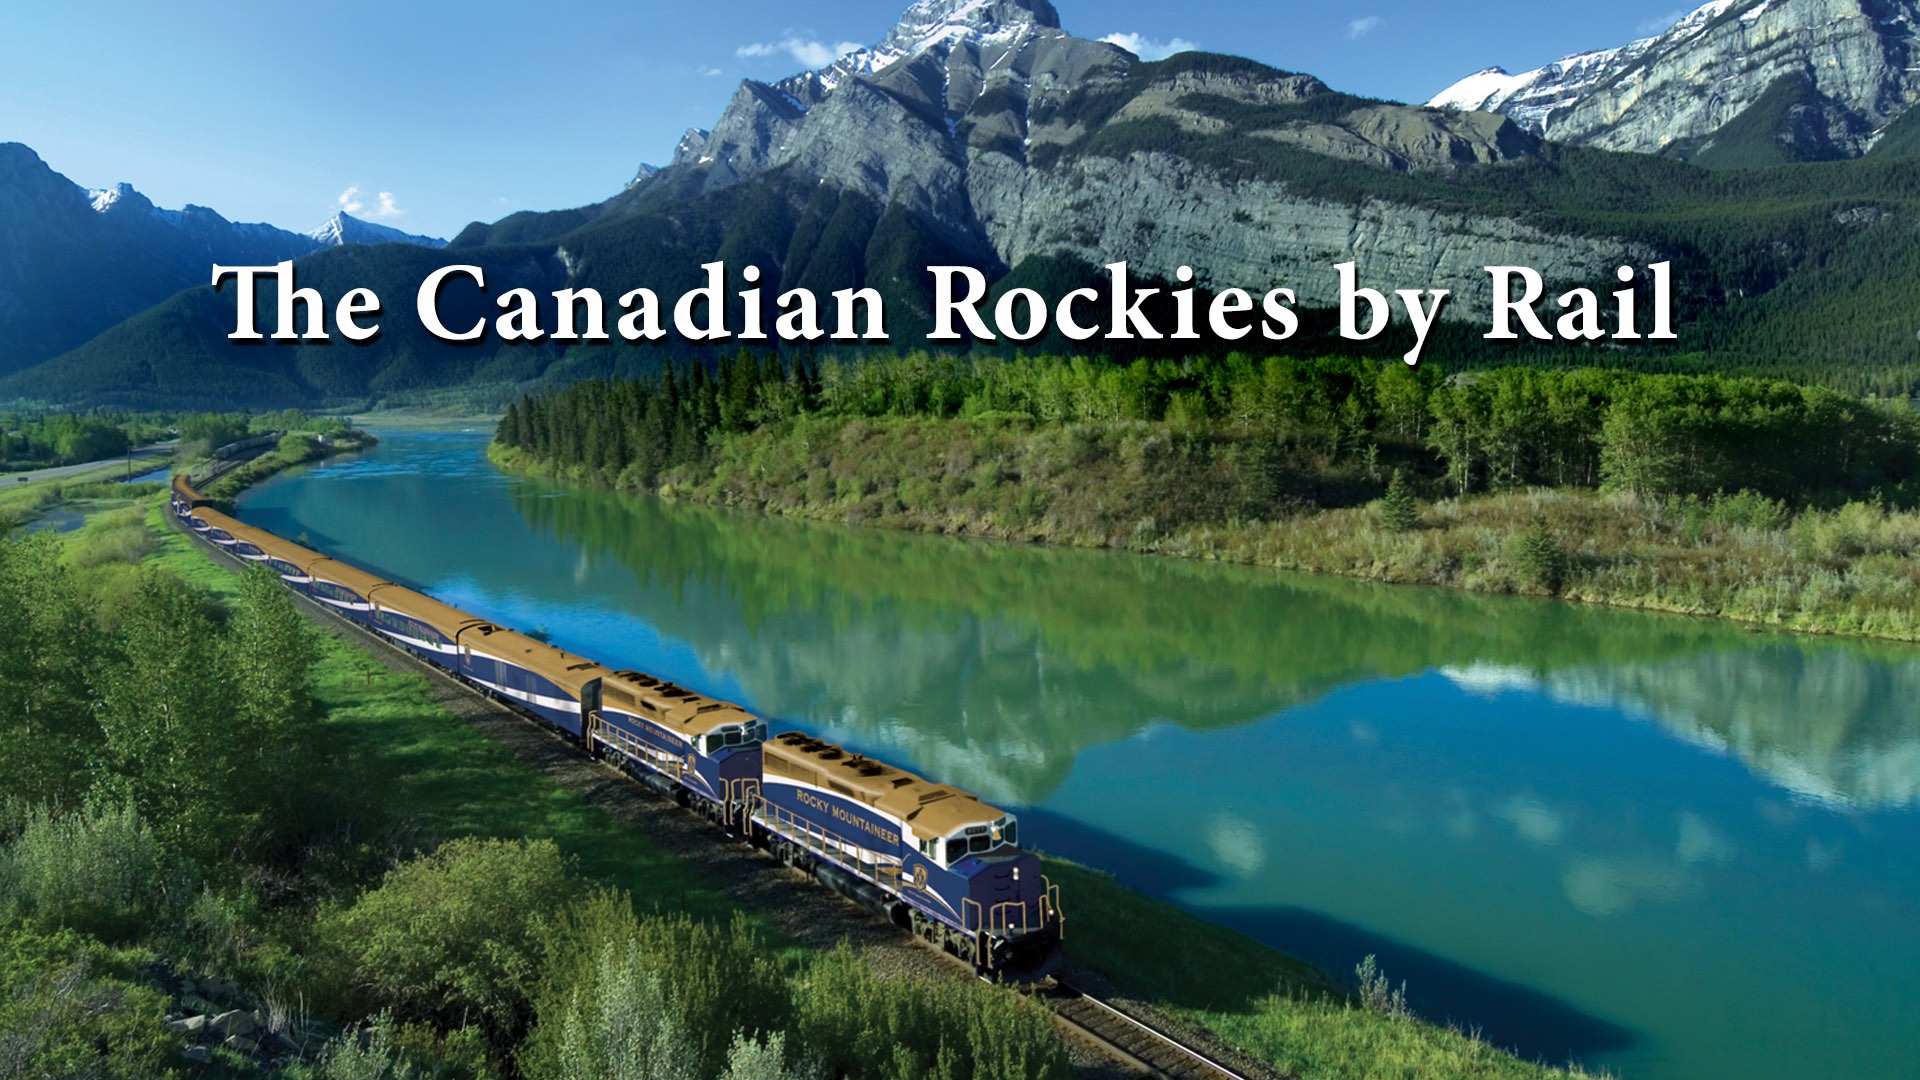 www.canadianrockiesbyrail.org